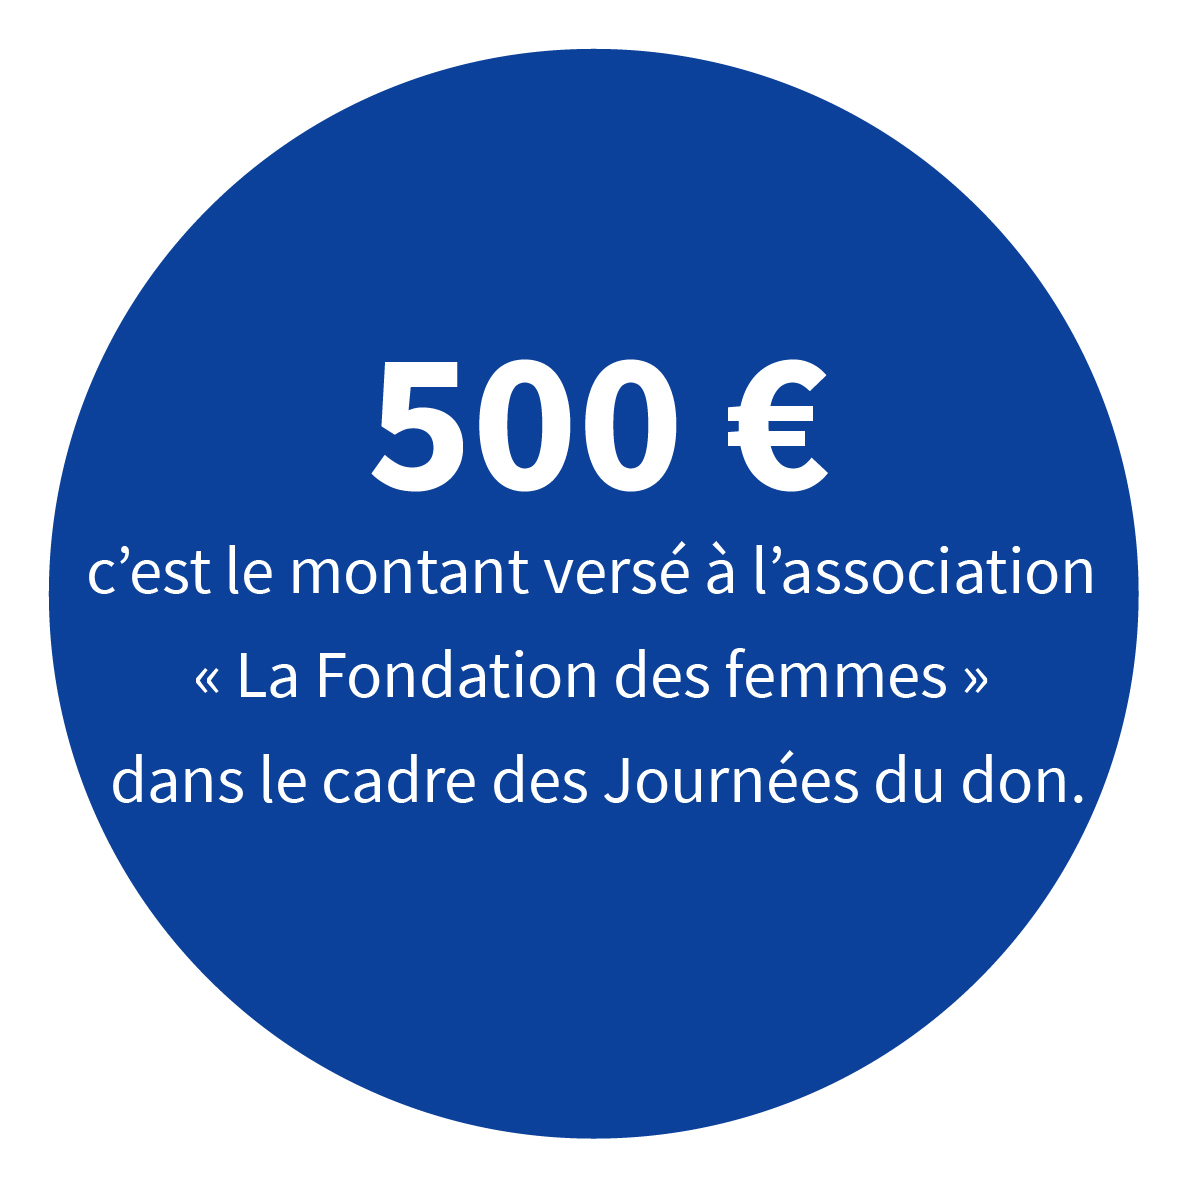 500 € c’est le montant versé à l’association « La Fondation des femmes » dans le cadre des Journées du don.